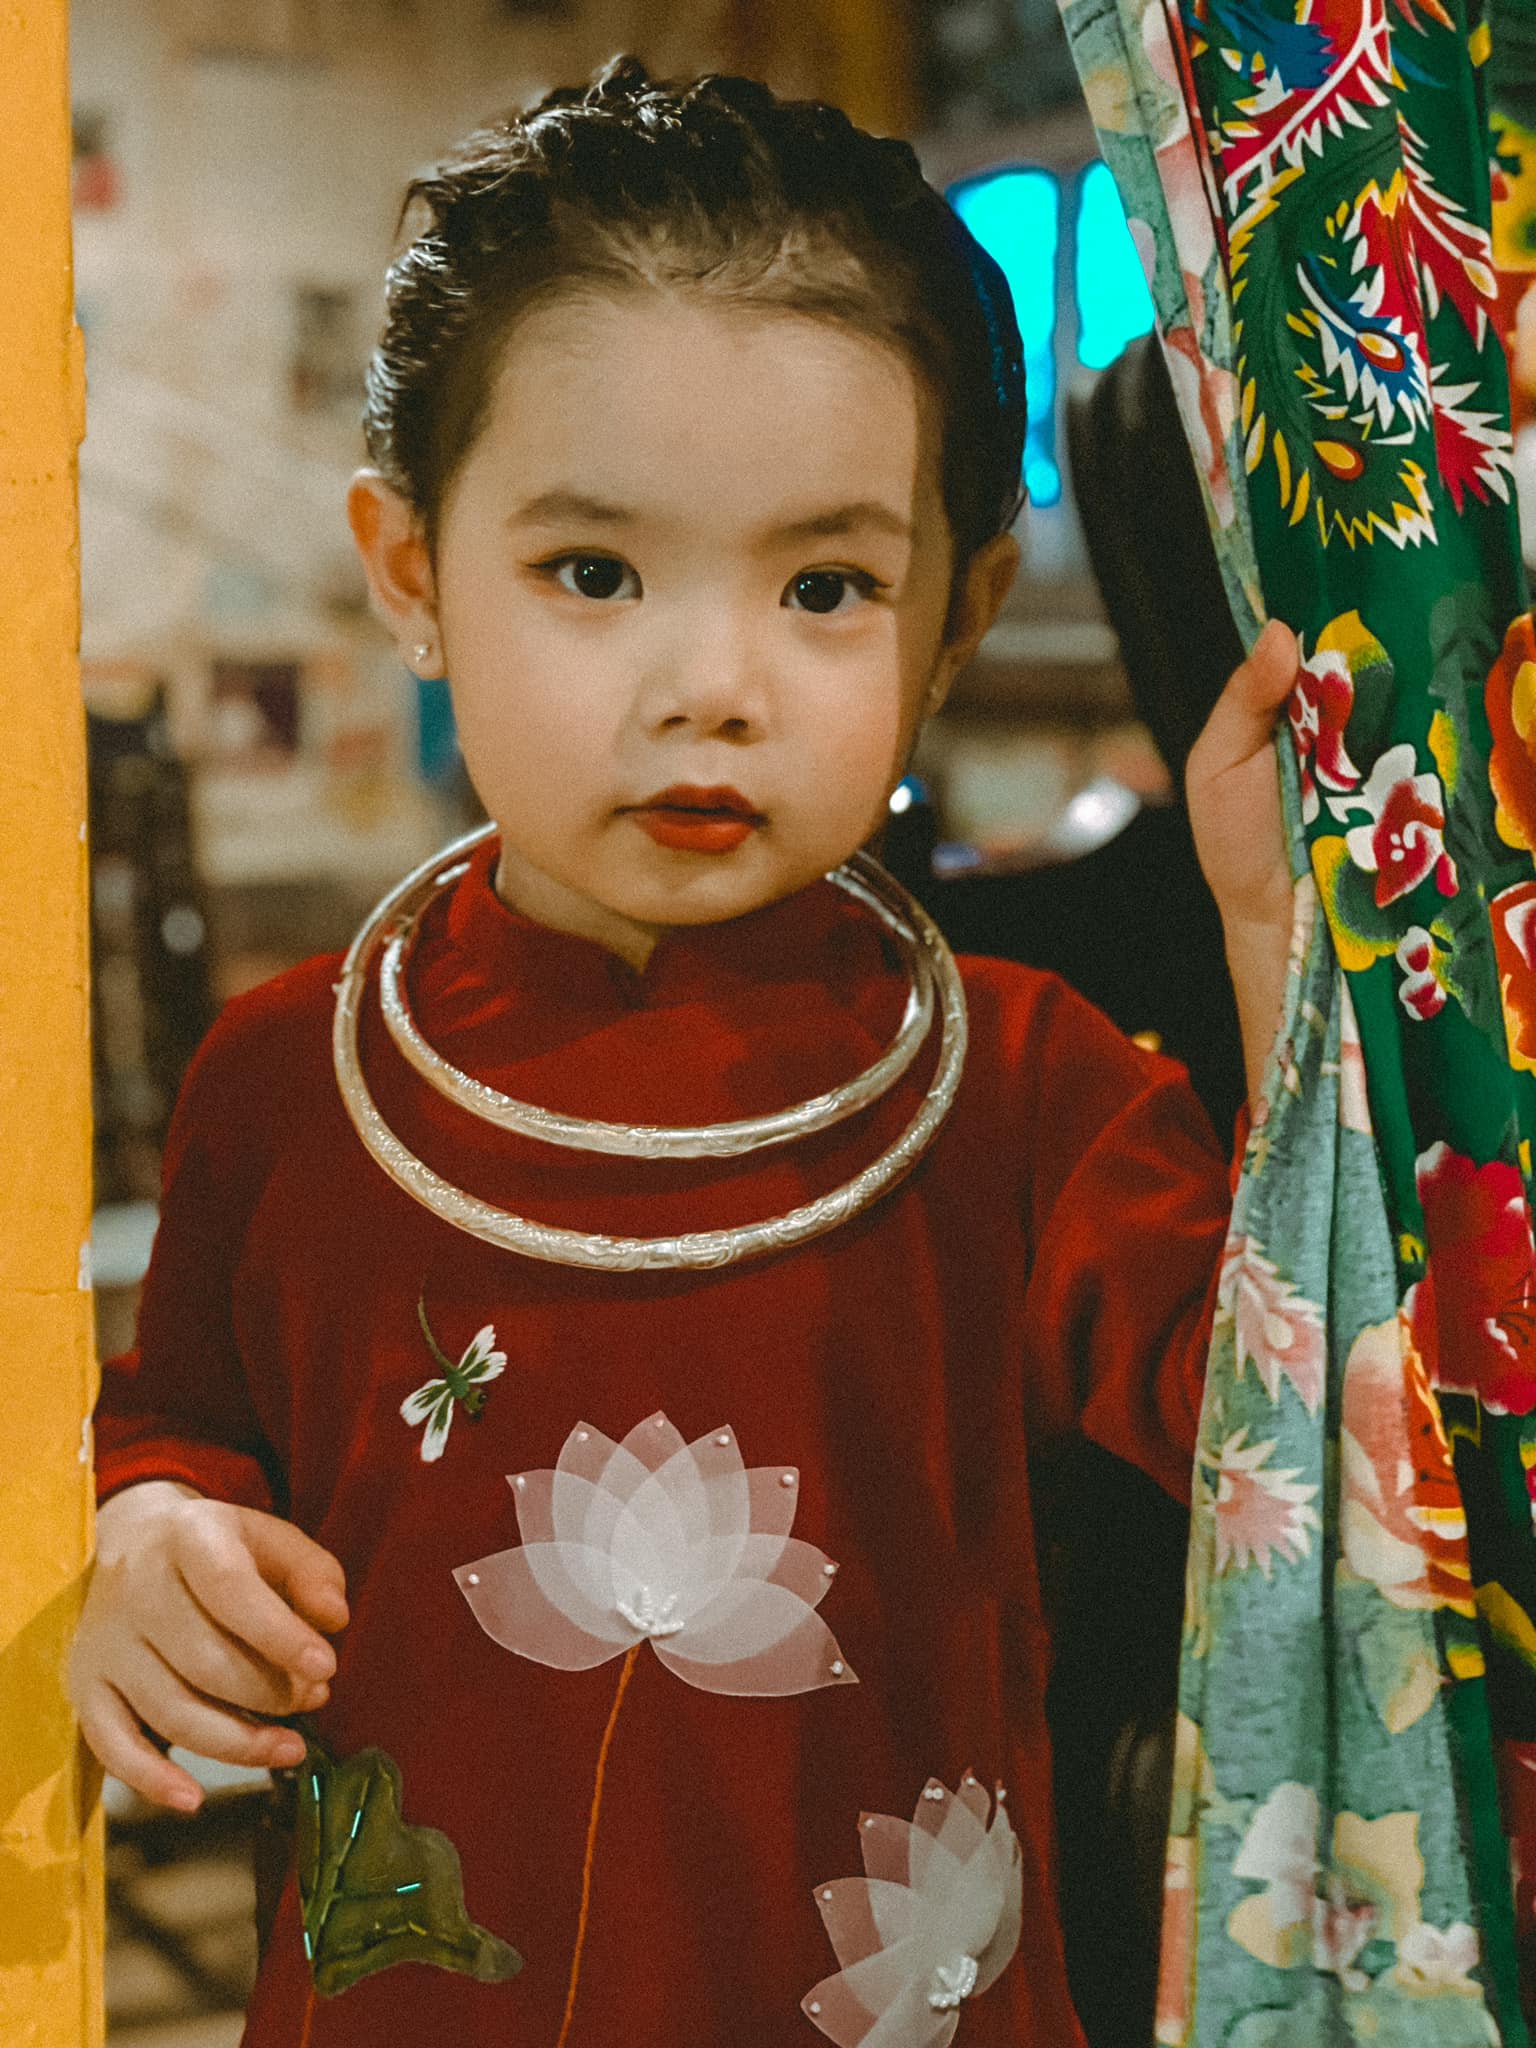 Nét đẹp truyền thống của Tết được tái hiện hoàn hảo trong bộ ảnh tết. Những gam màu đỏ, vàng, xanh lá cây, hình ảnh của ông bà ngồi gần mâm cúng và các hoạt động đón Tết rất đỗi quen thuộc. Xem hình ảnh để cảm nhận tinh hoa văn hoá của người Việt nhân dịp đặc biệt này.